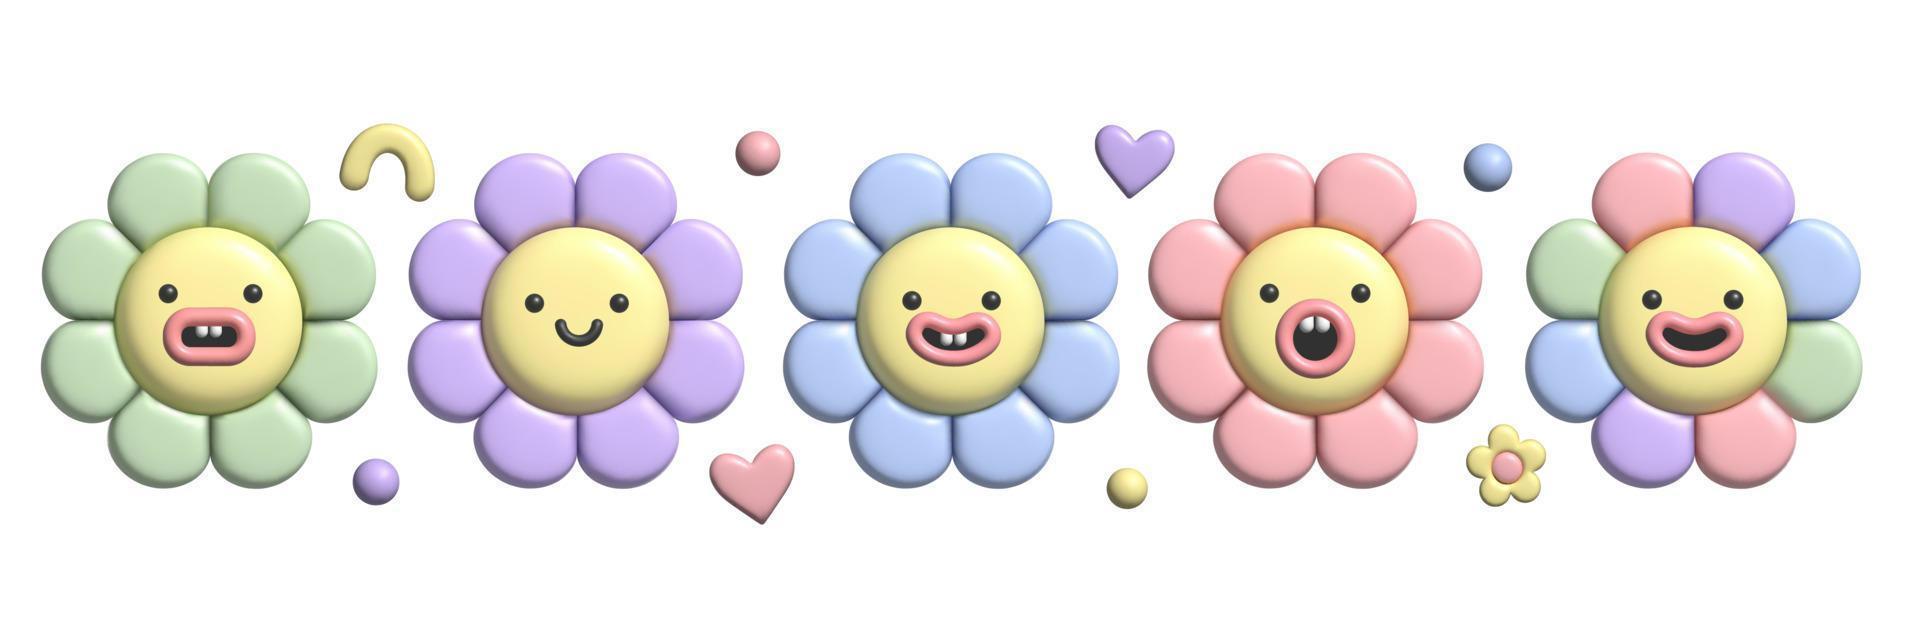 Conjunto de flores pastel 3d con efecto plastilina. y2k lindas pegatinas de margarita con sonrisa en un moderno estilo de plástico. vector